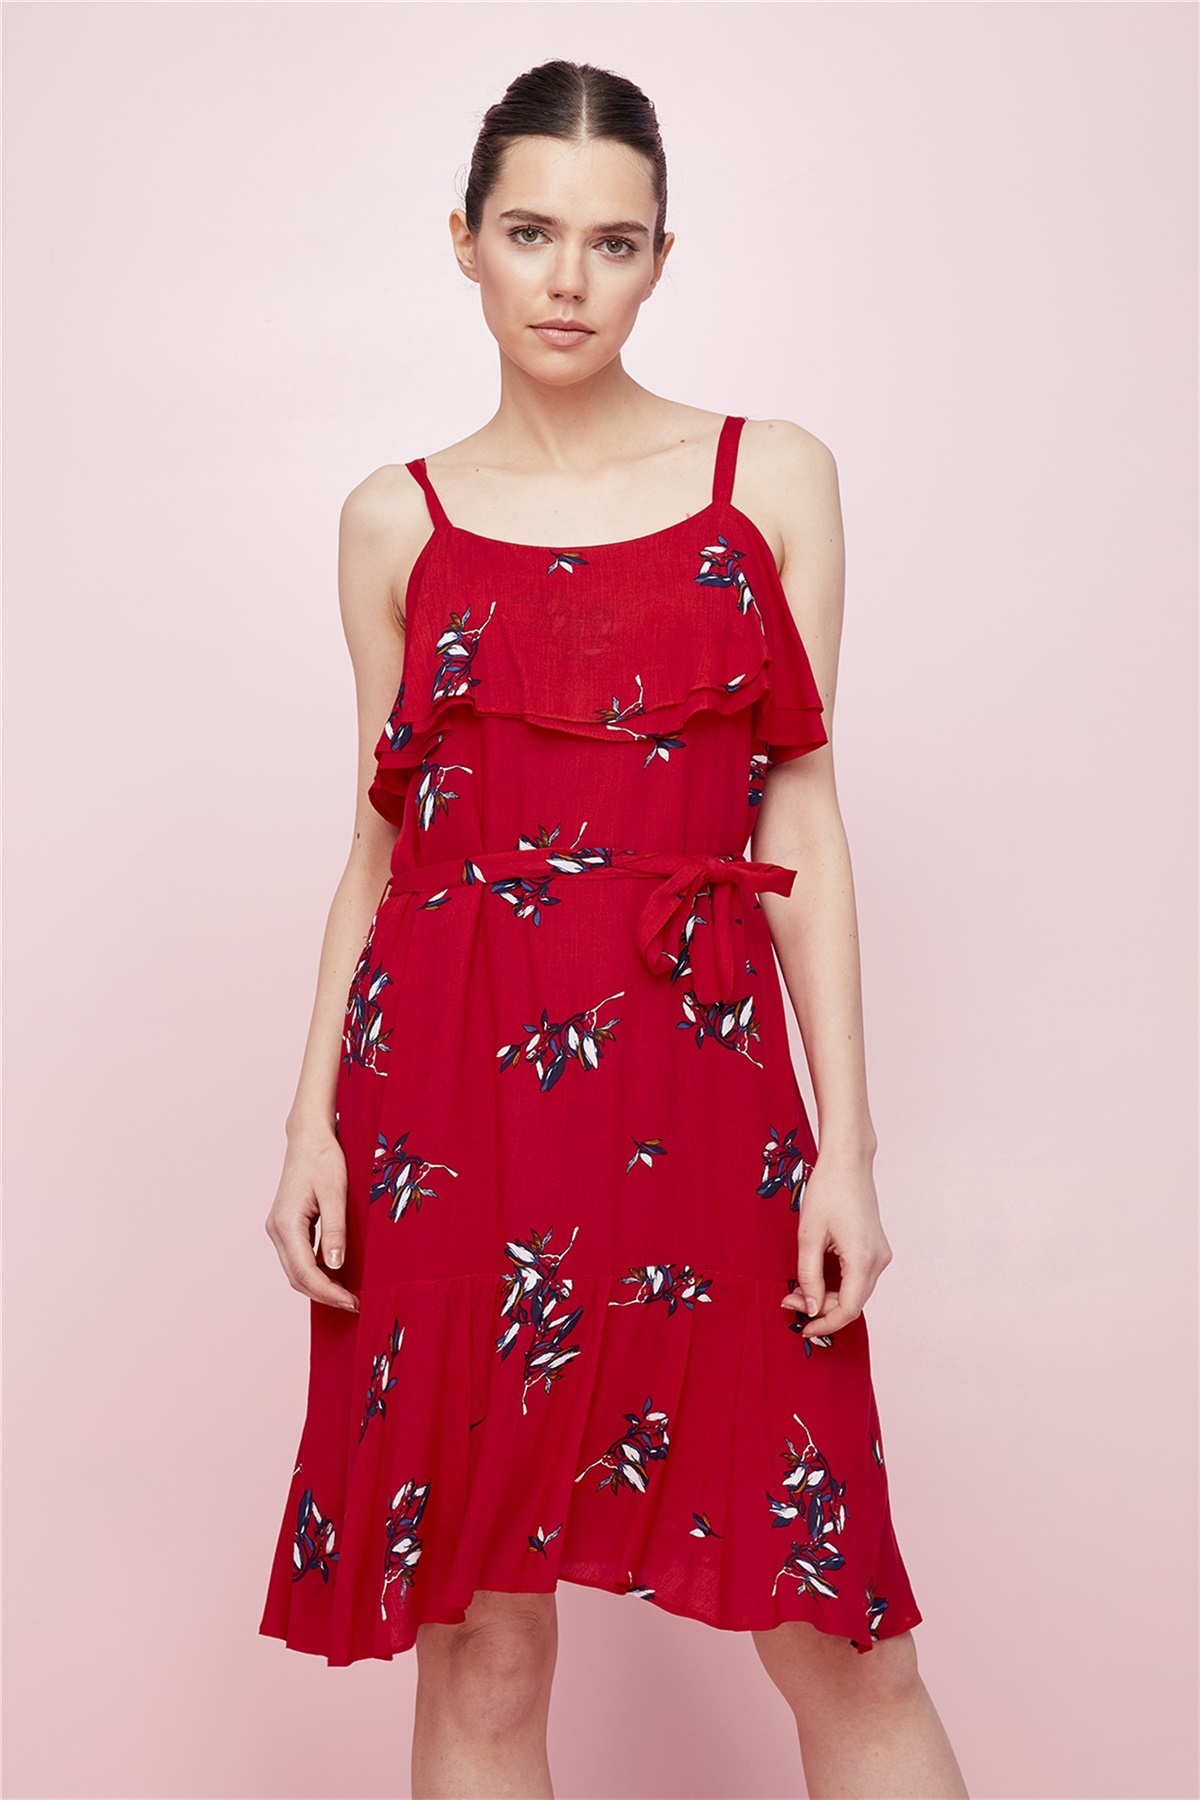 Elbise, Ön Yaka Ve Etek Altı Volanlı Parçalı, Askılı, Belden Kuşaklı Kırmızı  Çiçekli